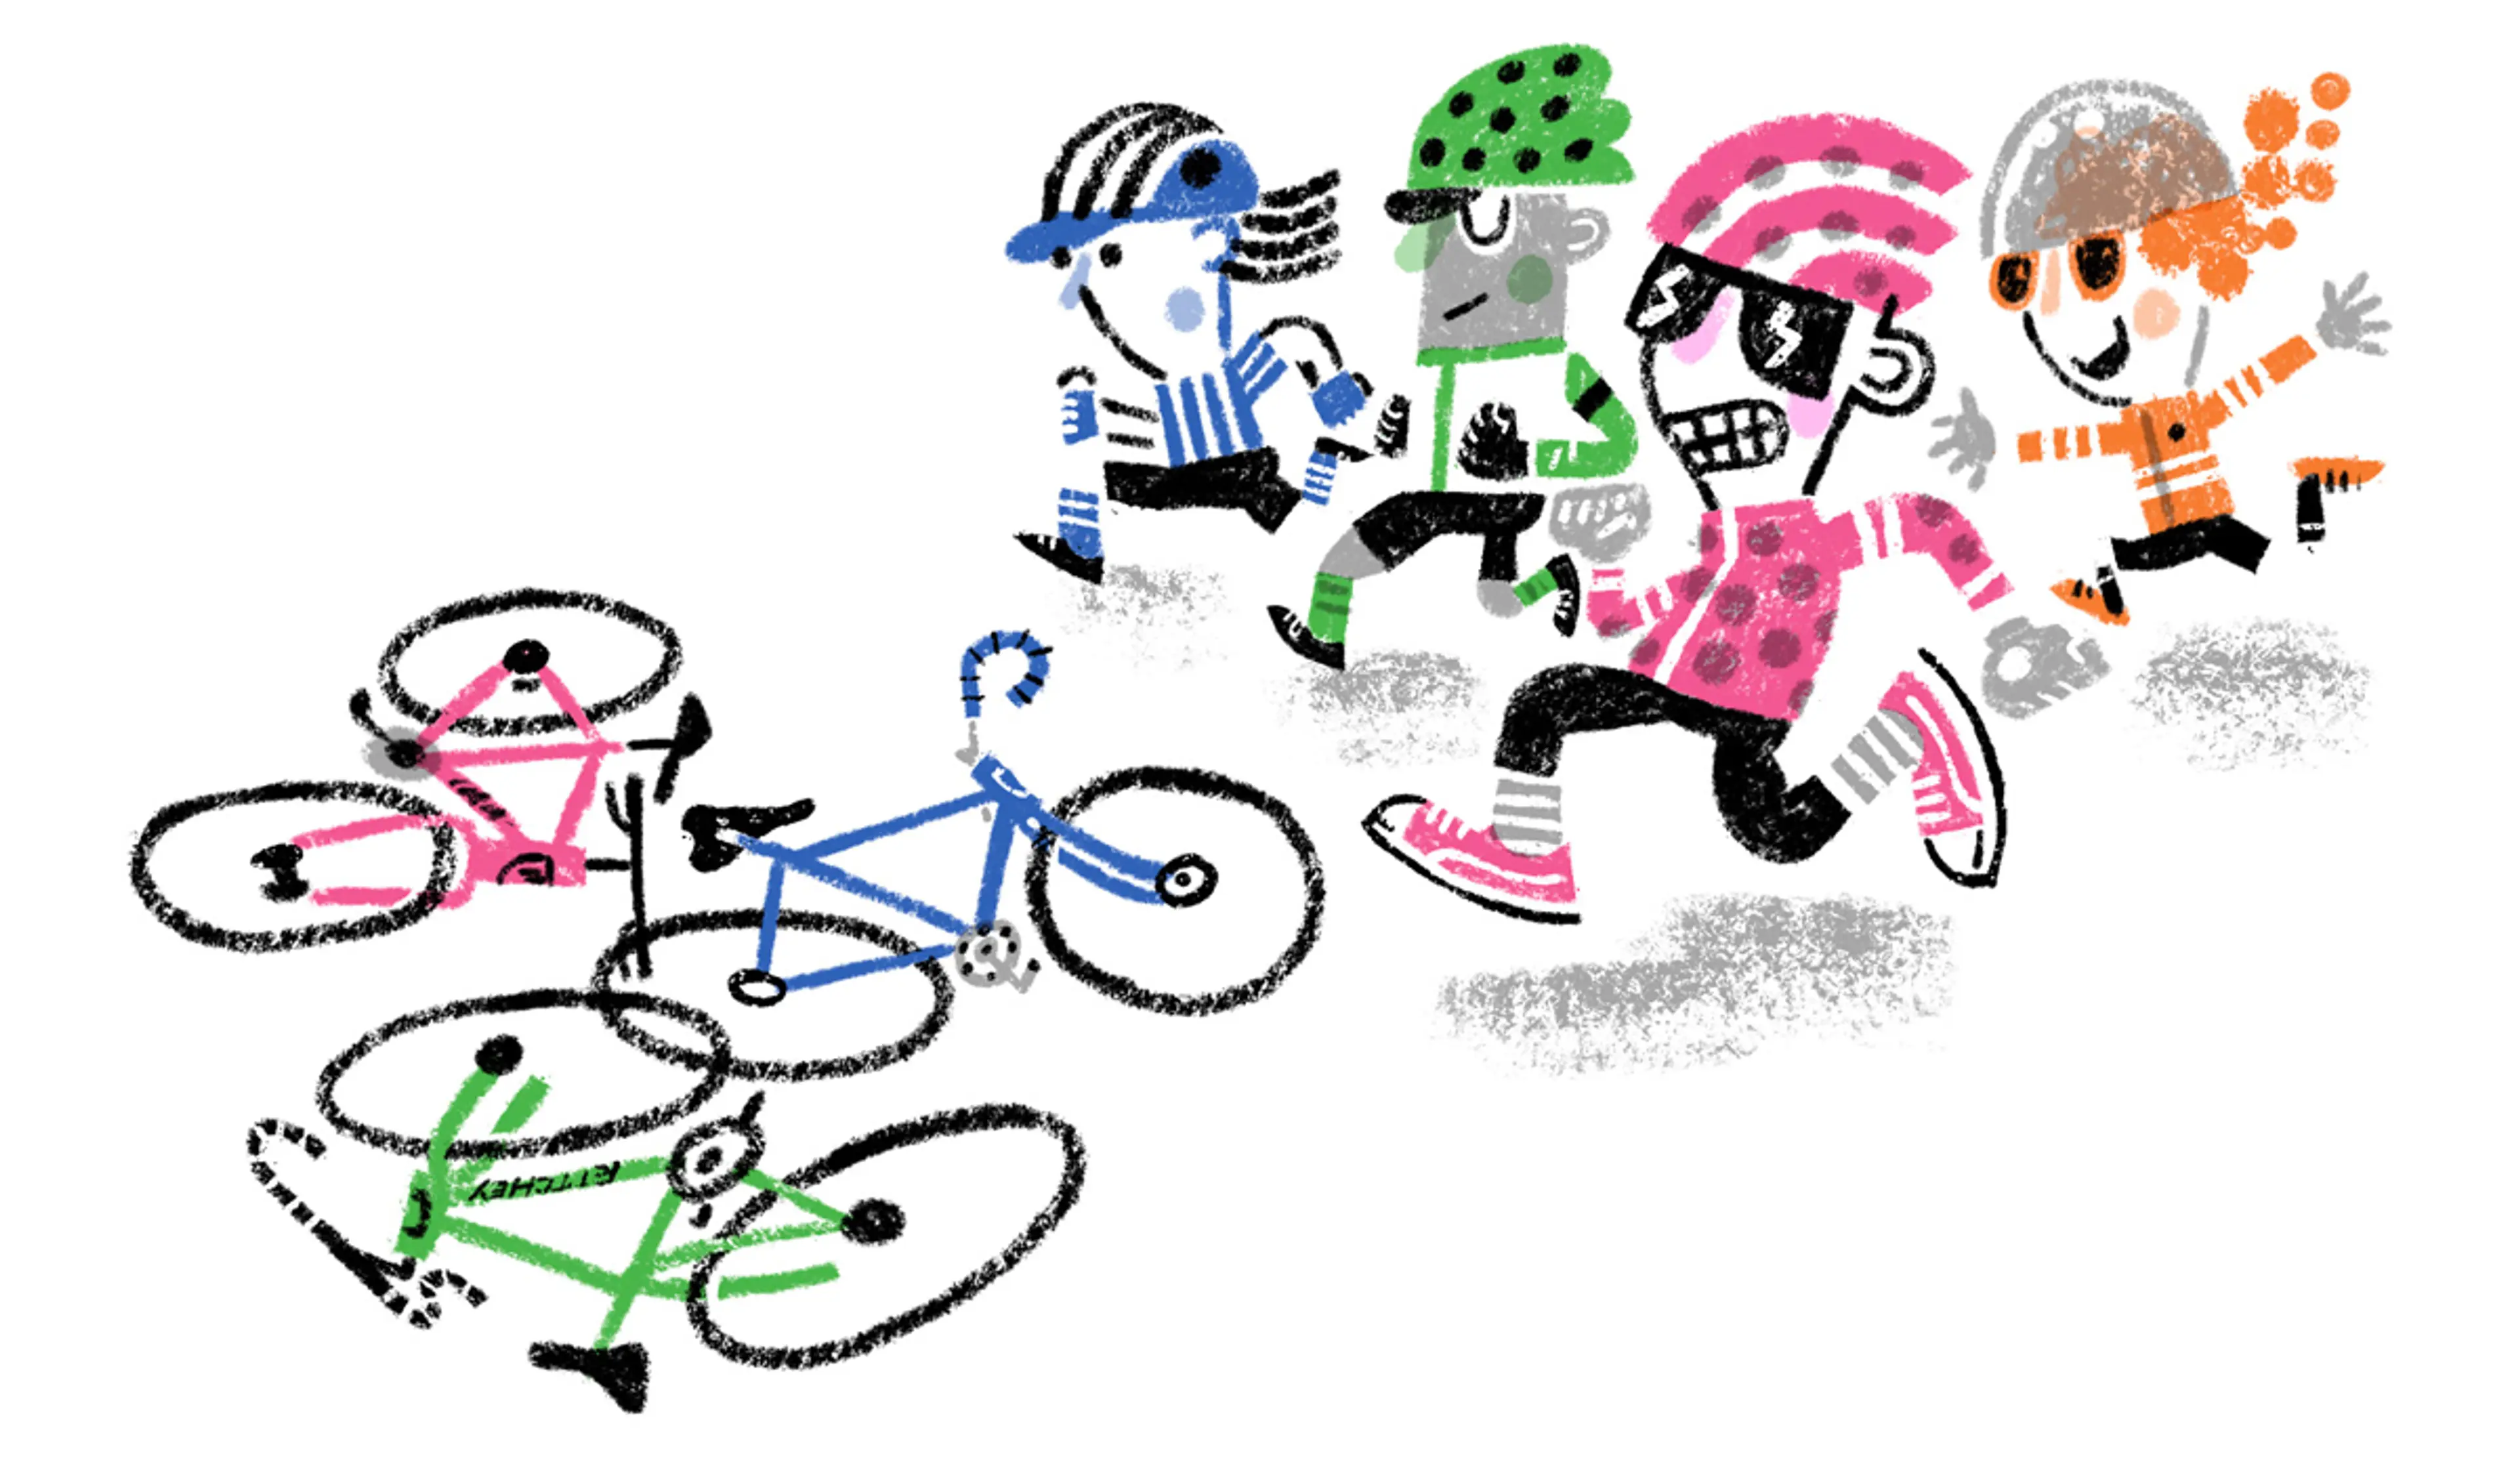 Ritchey Cyclocross - Men race